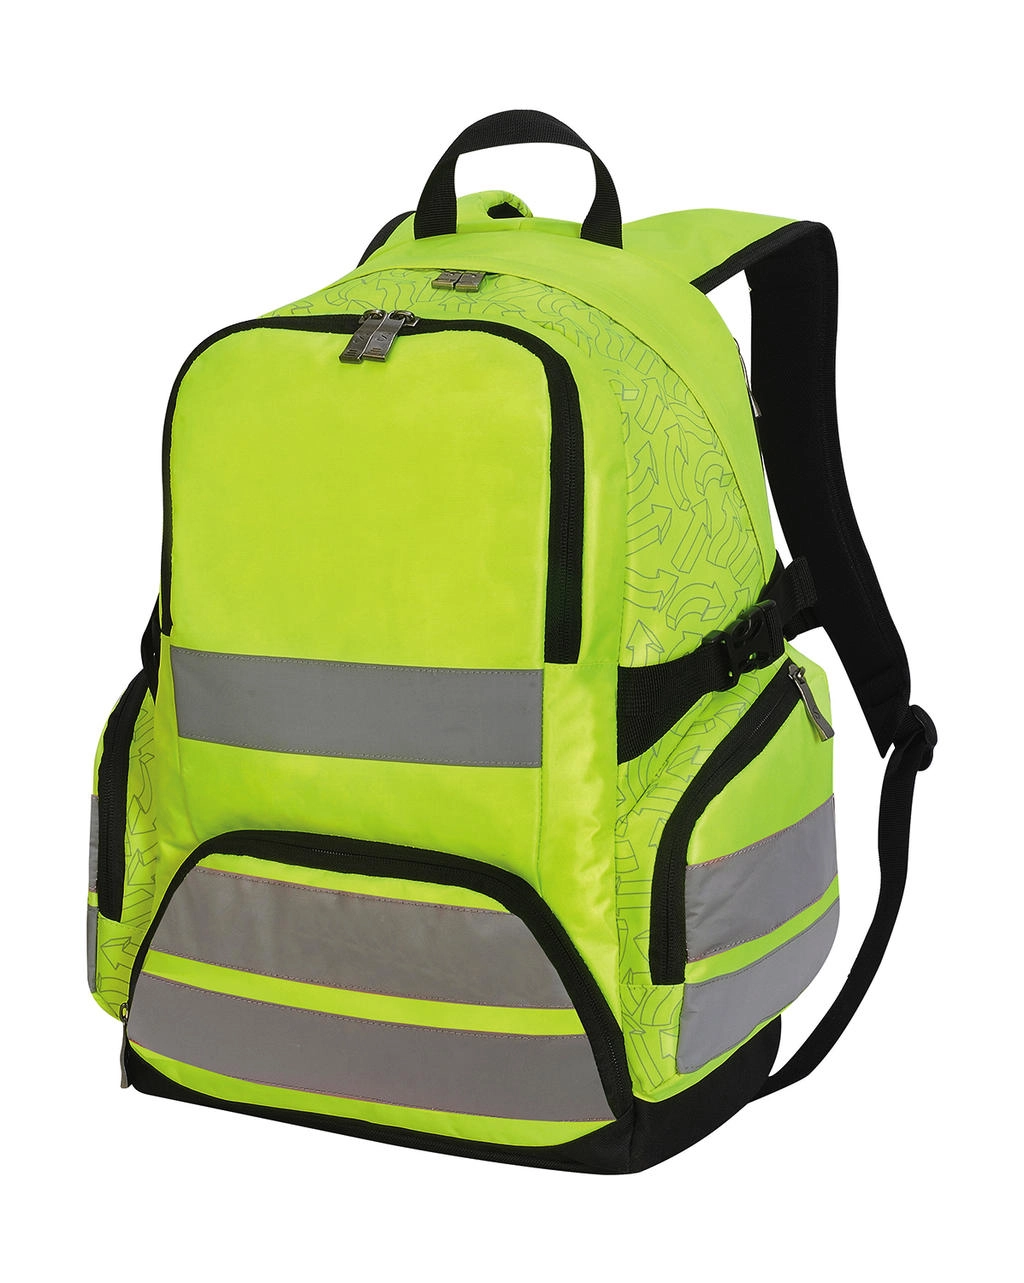 London Hi-Vis Backpack  zum Besticken und Bedrucken in der Farbe Hi-Vis Yellow mit Ihren Logo, Schriftzug oder Motiv.